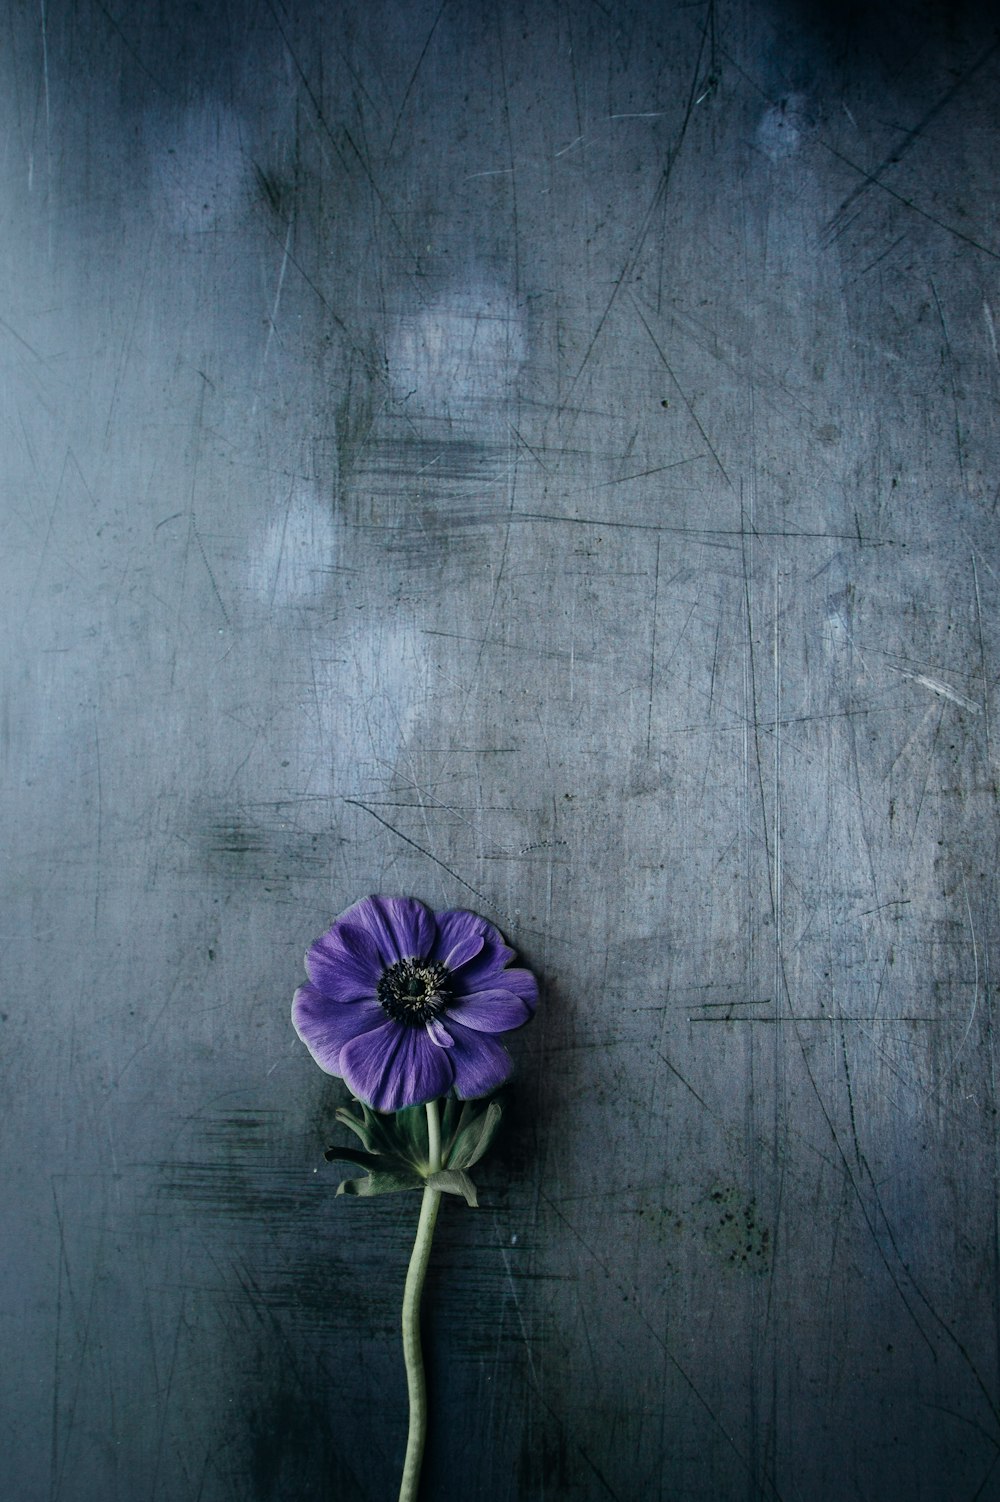 purple petaled flower on gray surface photo – Free Flower Image on Unsplash